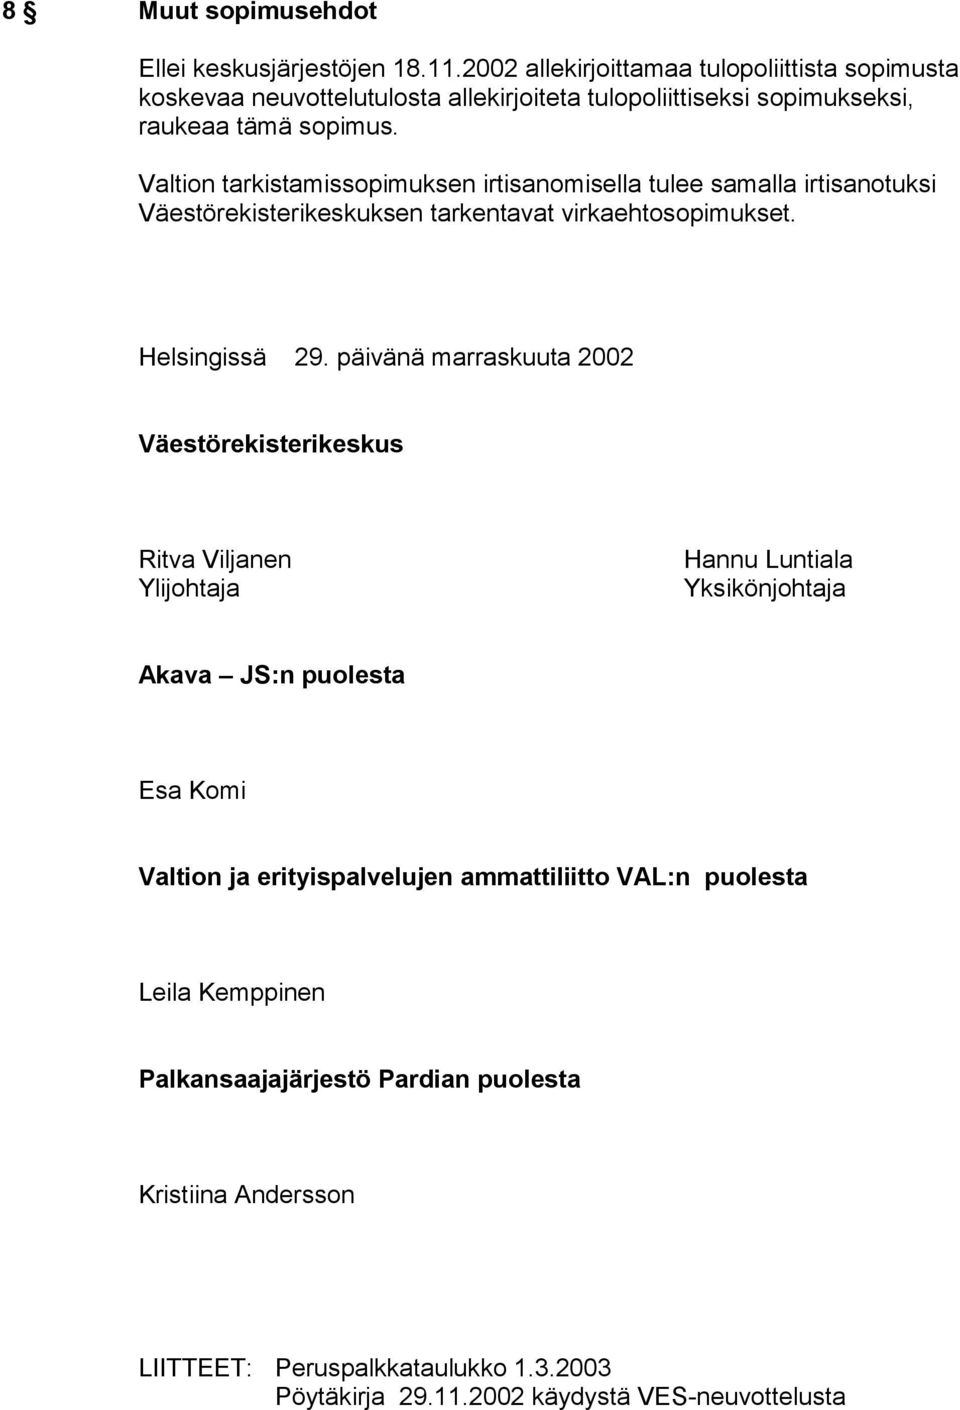 Valtion tarkistamissopimuksen irtisanomisella tulee samalla irtisanotuksi Väestörekisterikeskuksen tarkentavat virkaehtosopimukset. Helsingissä 29.